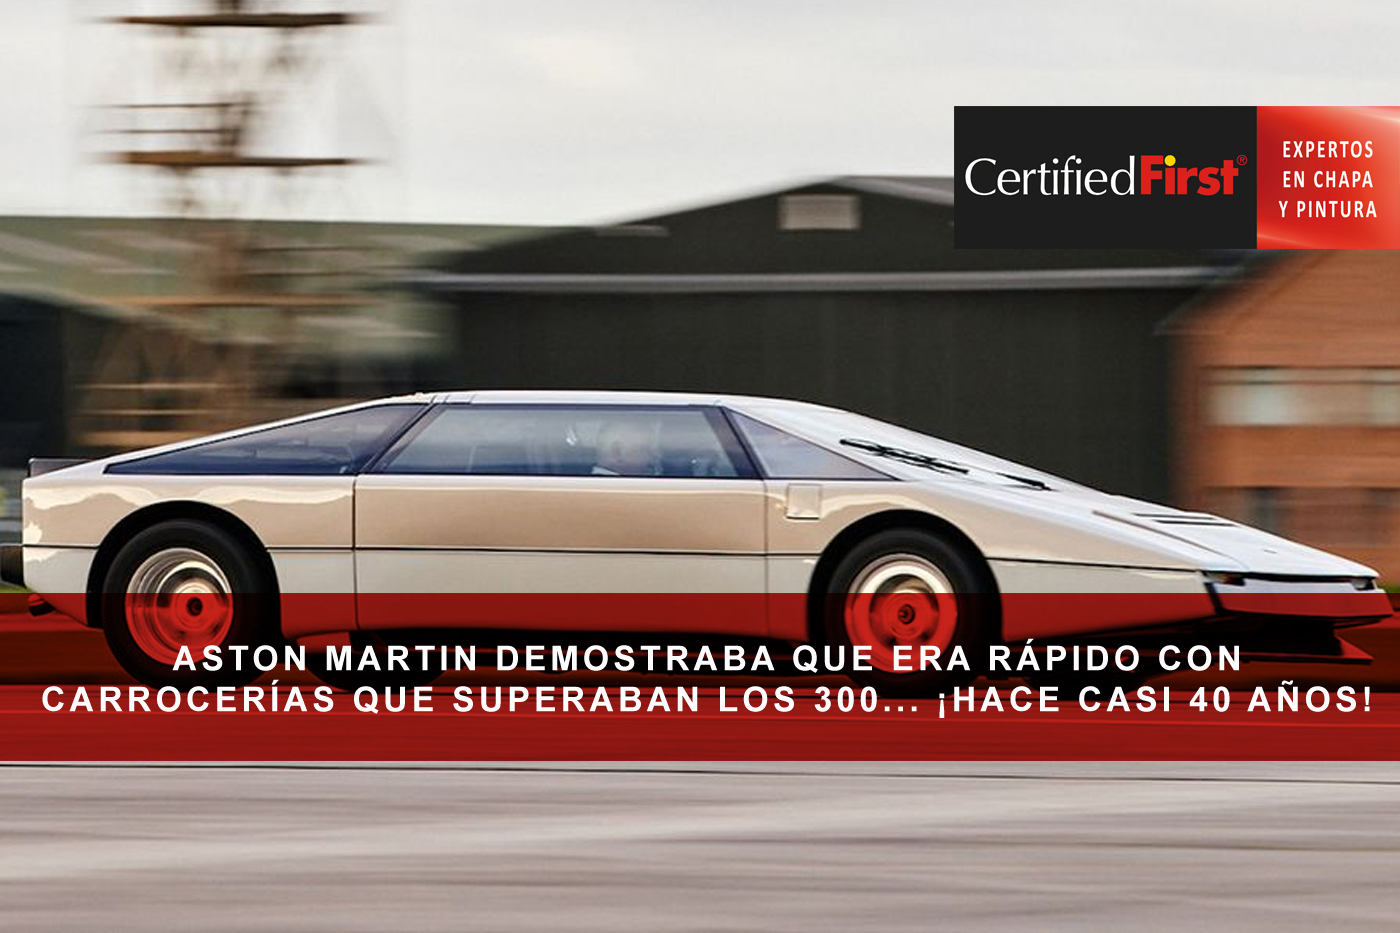 Aston Martin ya demostraba que era rápido con carrocerías que superaban los 300 km/h hace 40 años